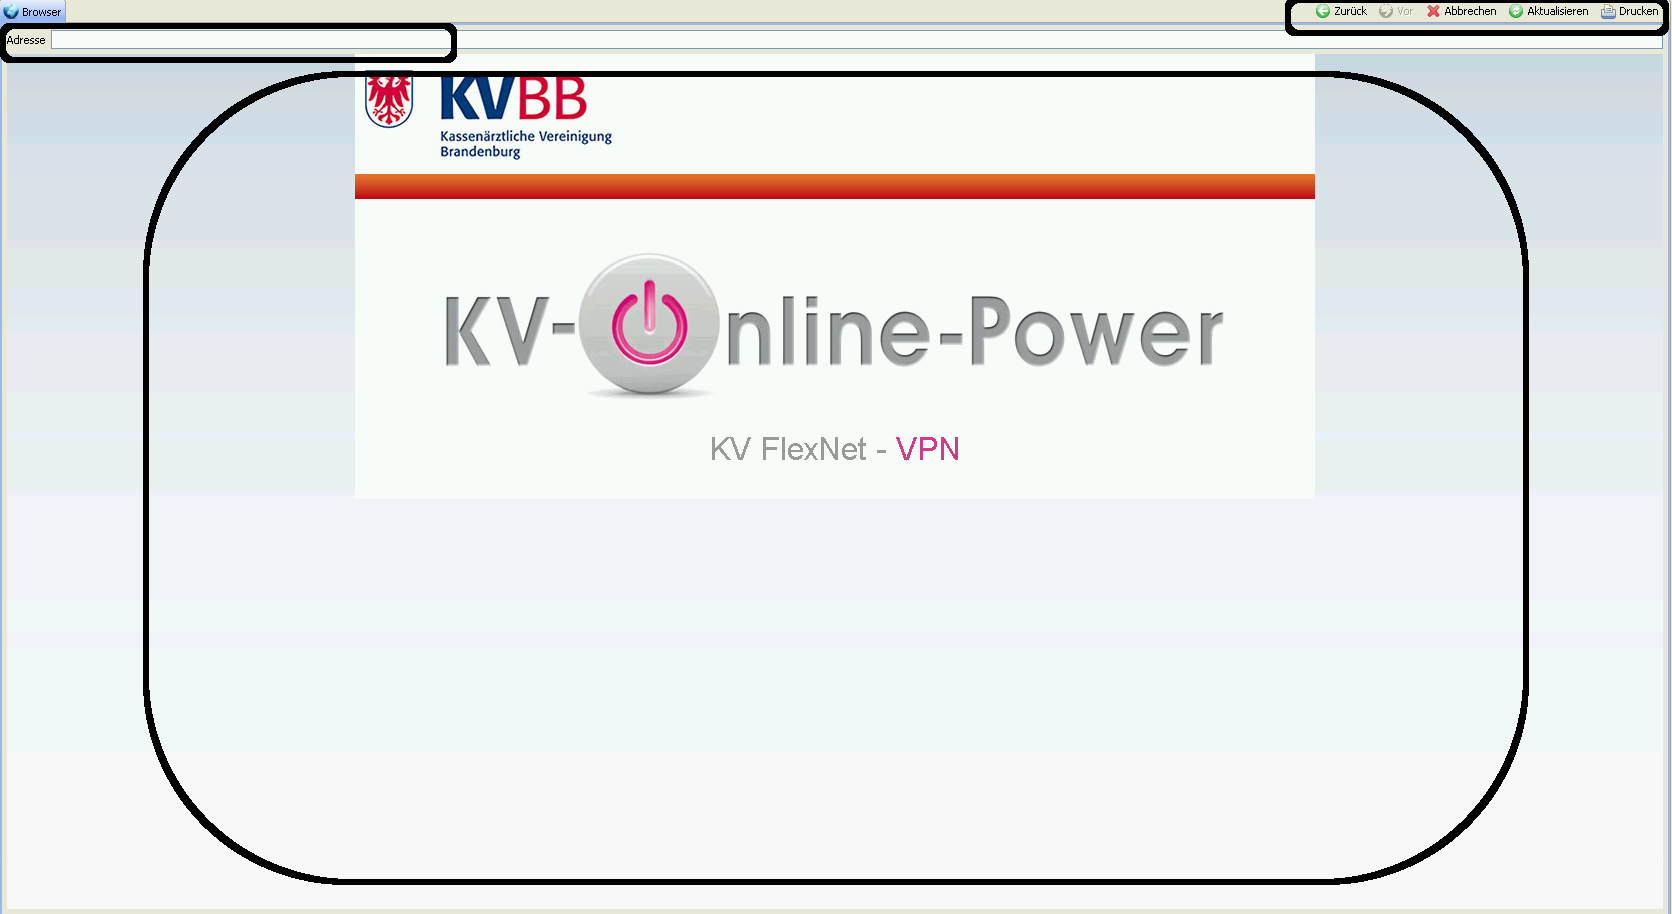 Die schwarz markierten Rechtecke sind: 1. Der Adressbereich: Die Webadressen des KVBB Portals werden dort angezeigt.